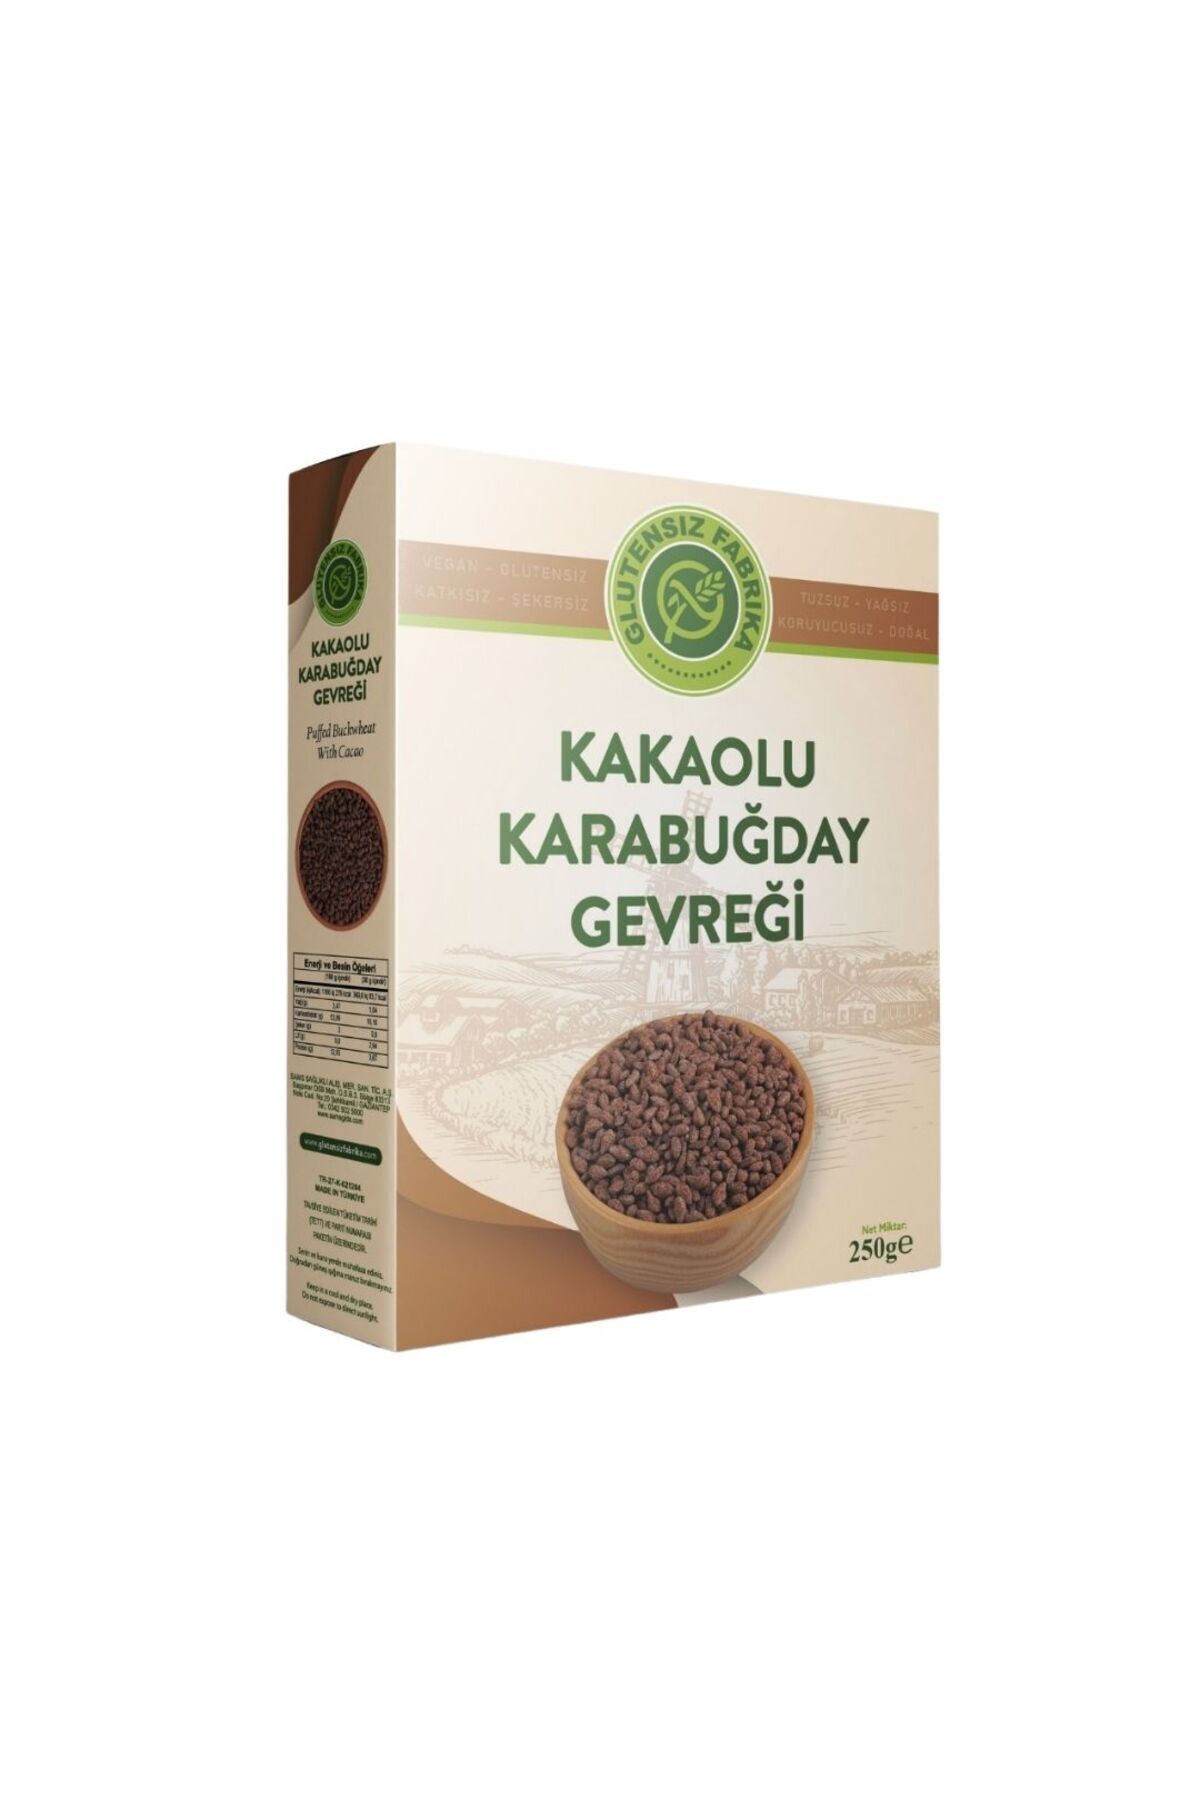 GLUTENSİZ FABRİKA Glutensiz Kakaolu Karabuğday Gevreği 250 gram Katkısız Doğal Sağlıklı